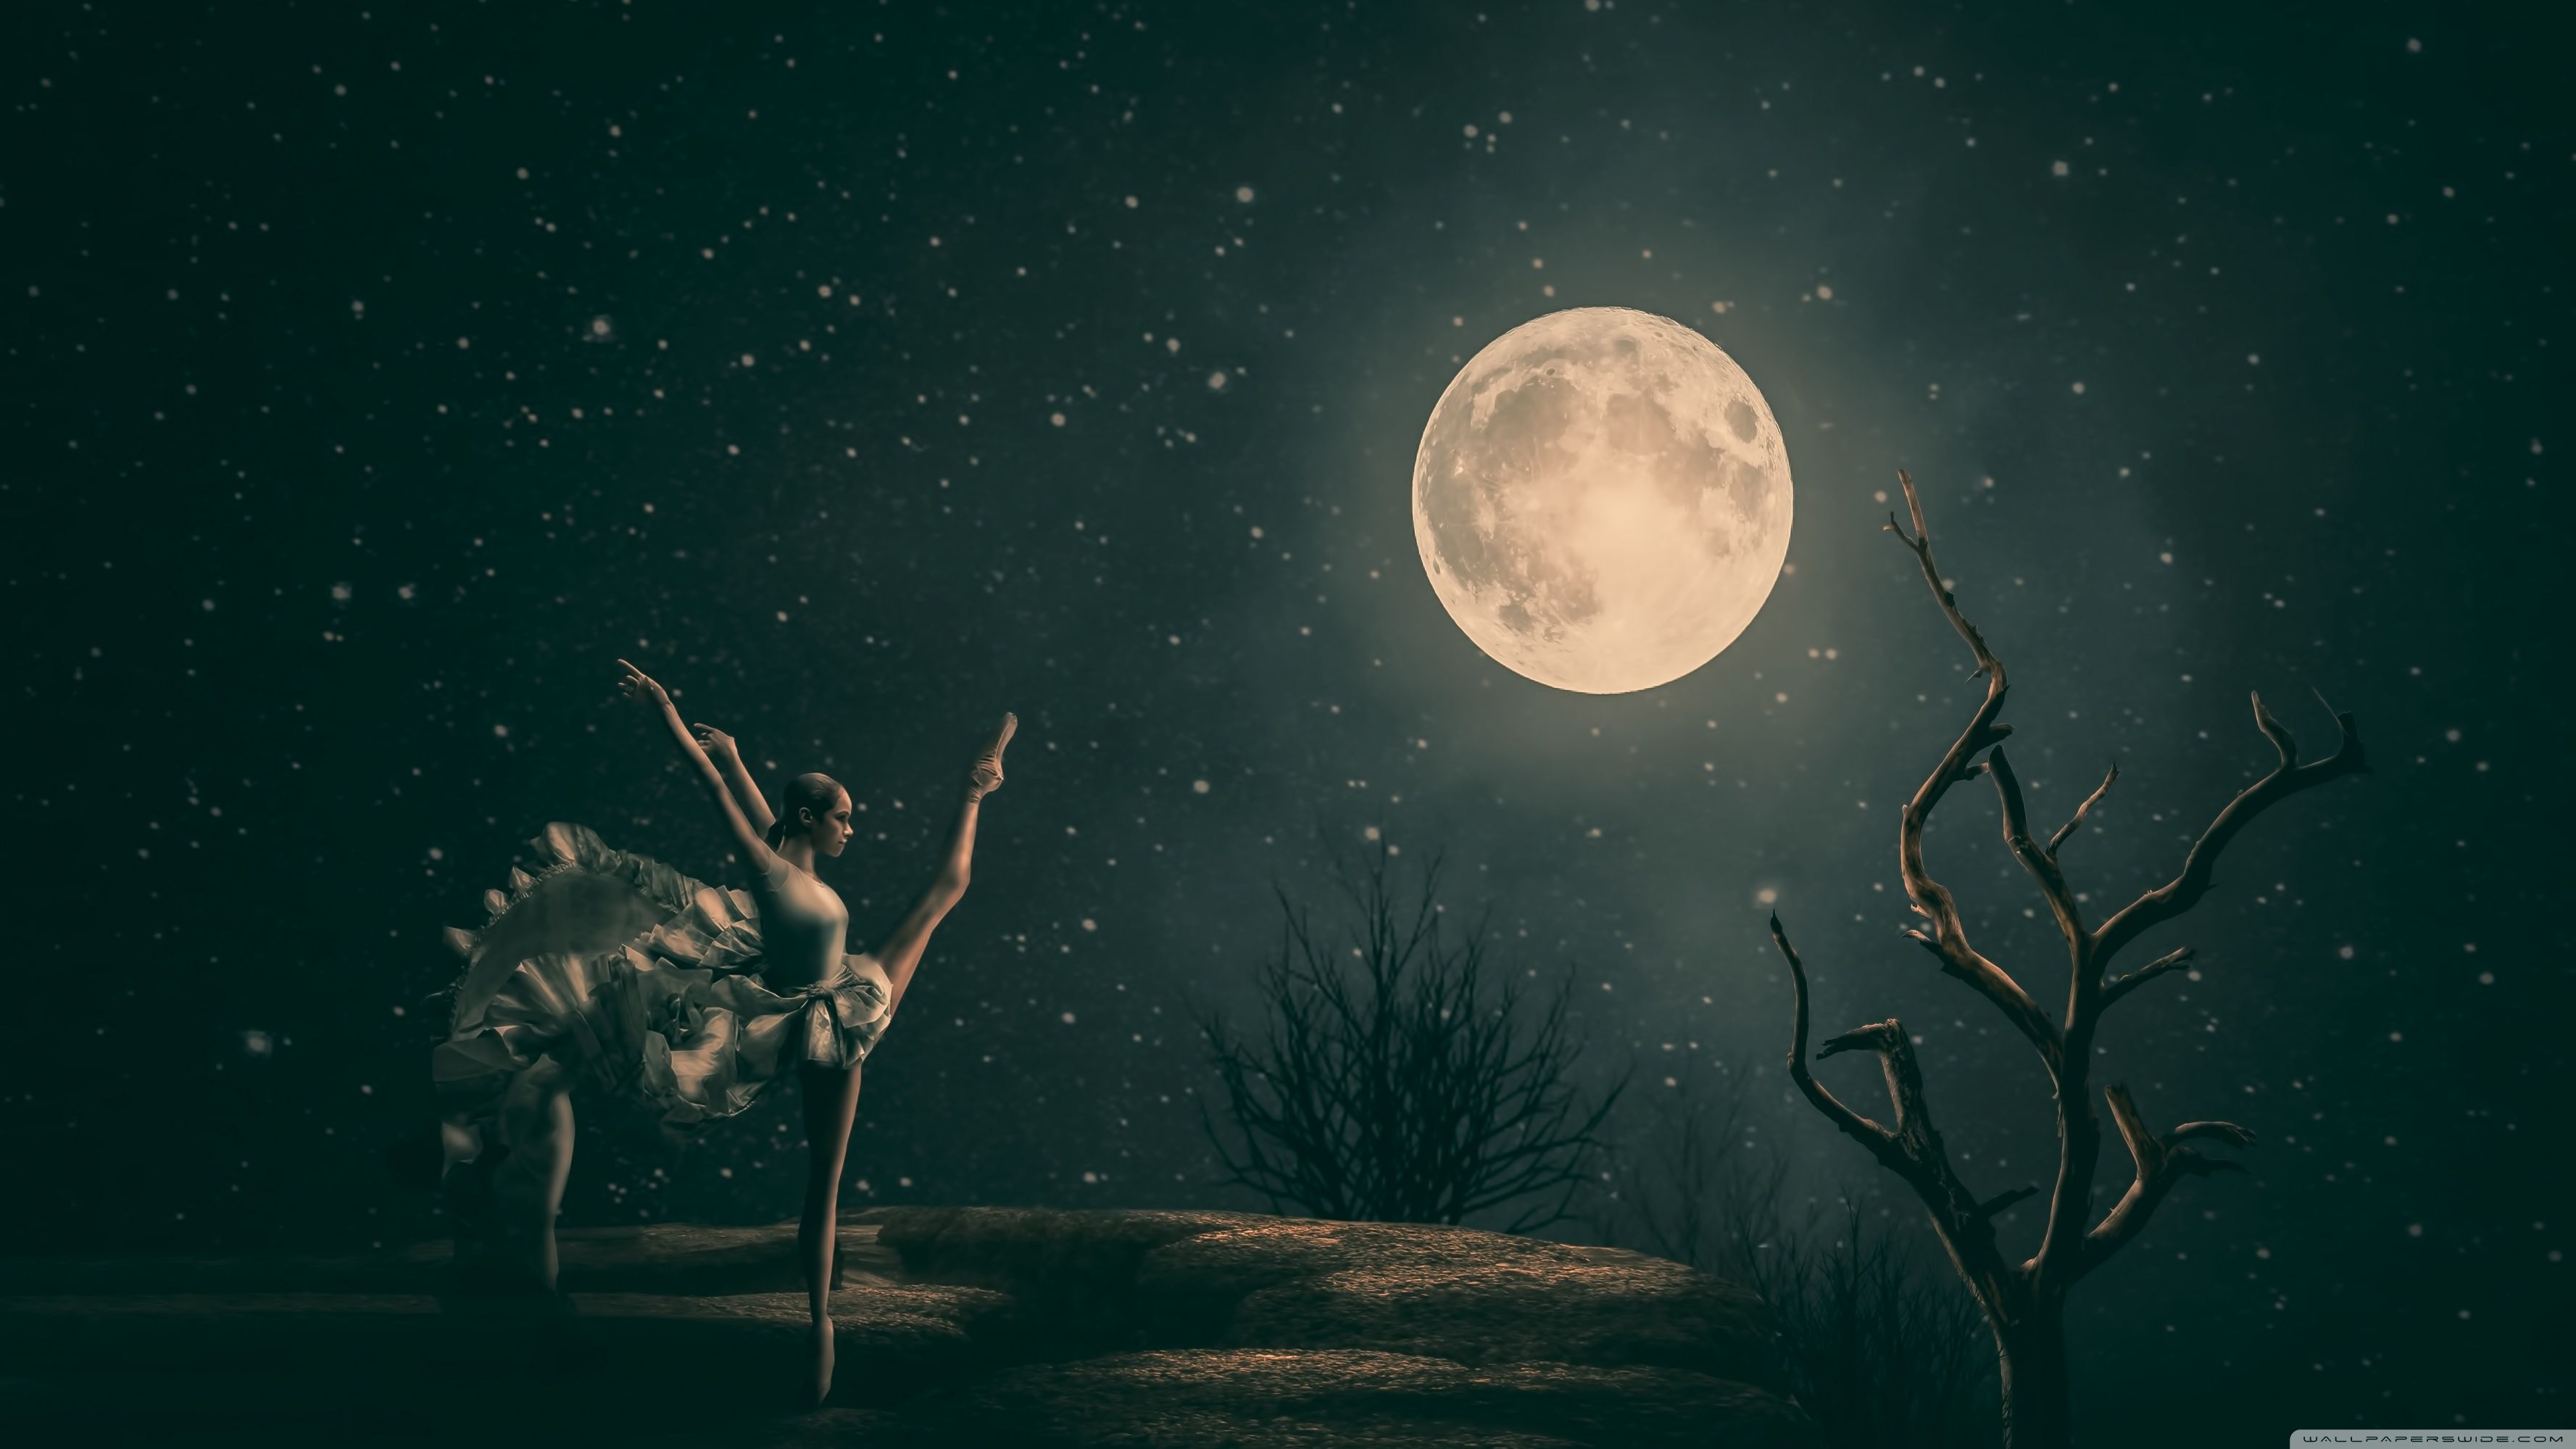 Ballerina in the moonlight wallpaper - Artistic wallpapers - #33130 - Dance